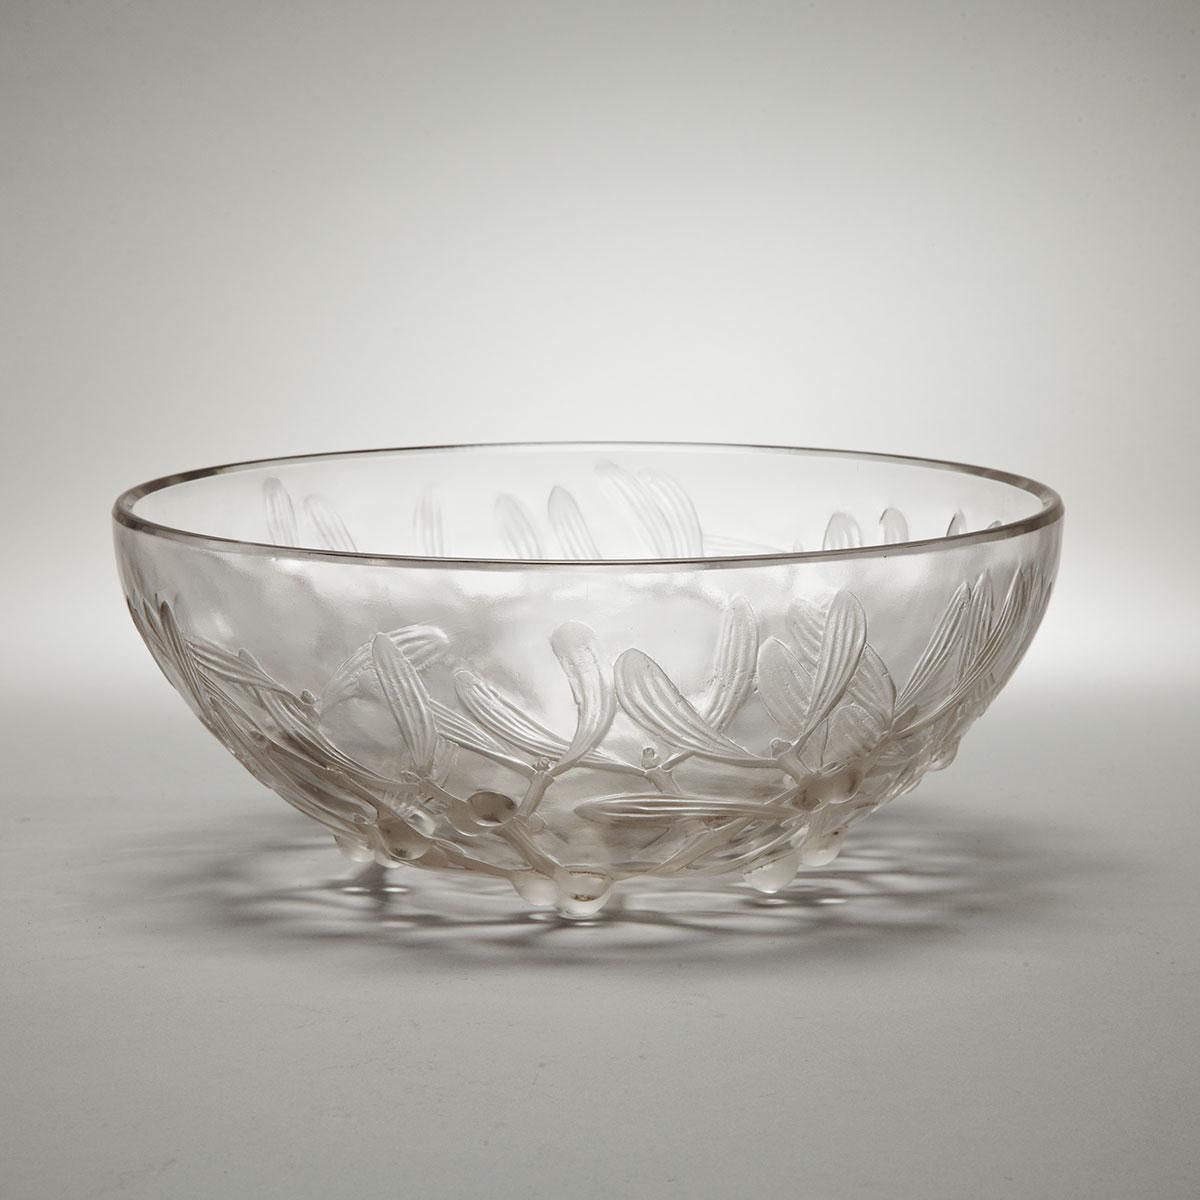 ‘Gui’, Lalique Moulded Glass Bowl, c.1930